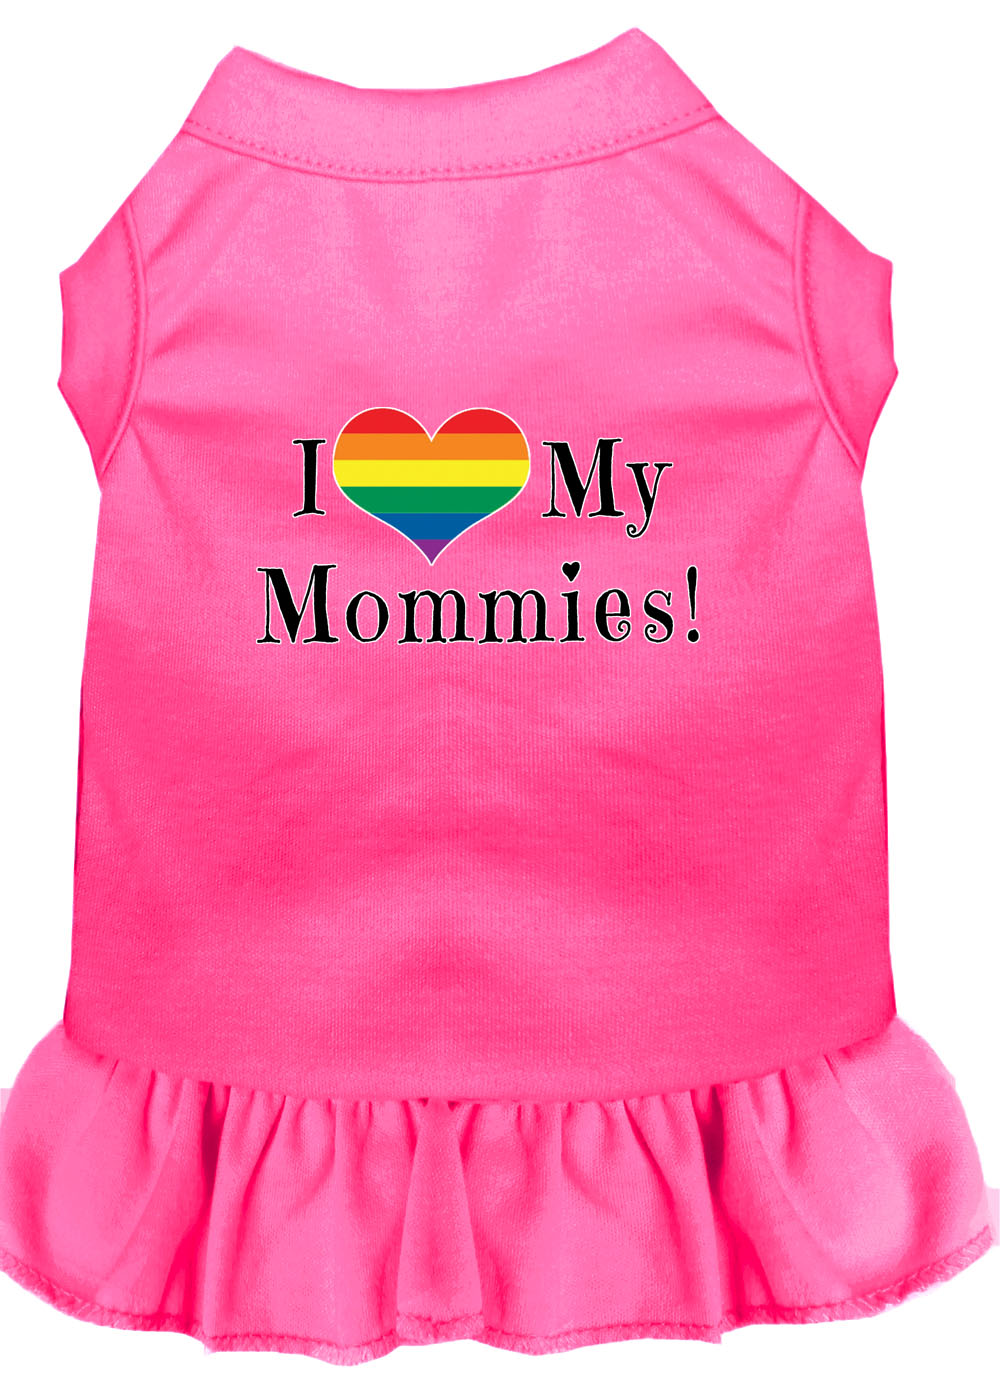 I Heart my Mommies Screen Print Dog Dress Bright Pink XXL